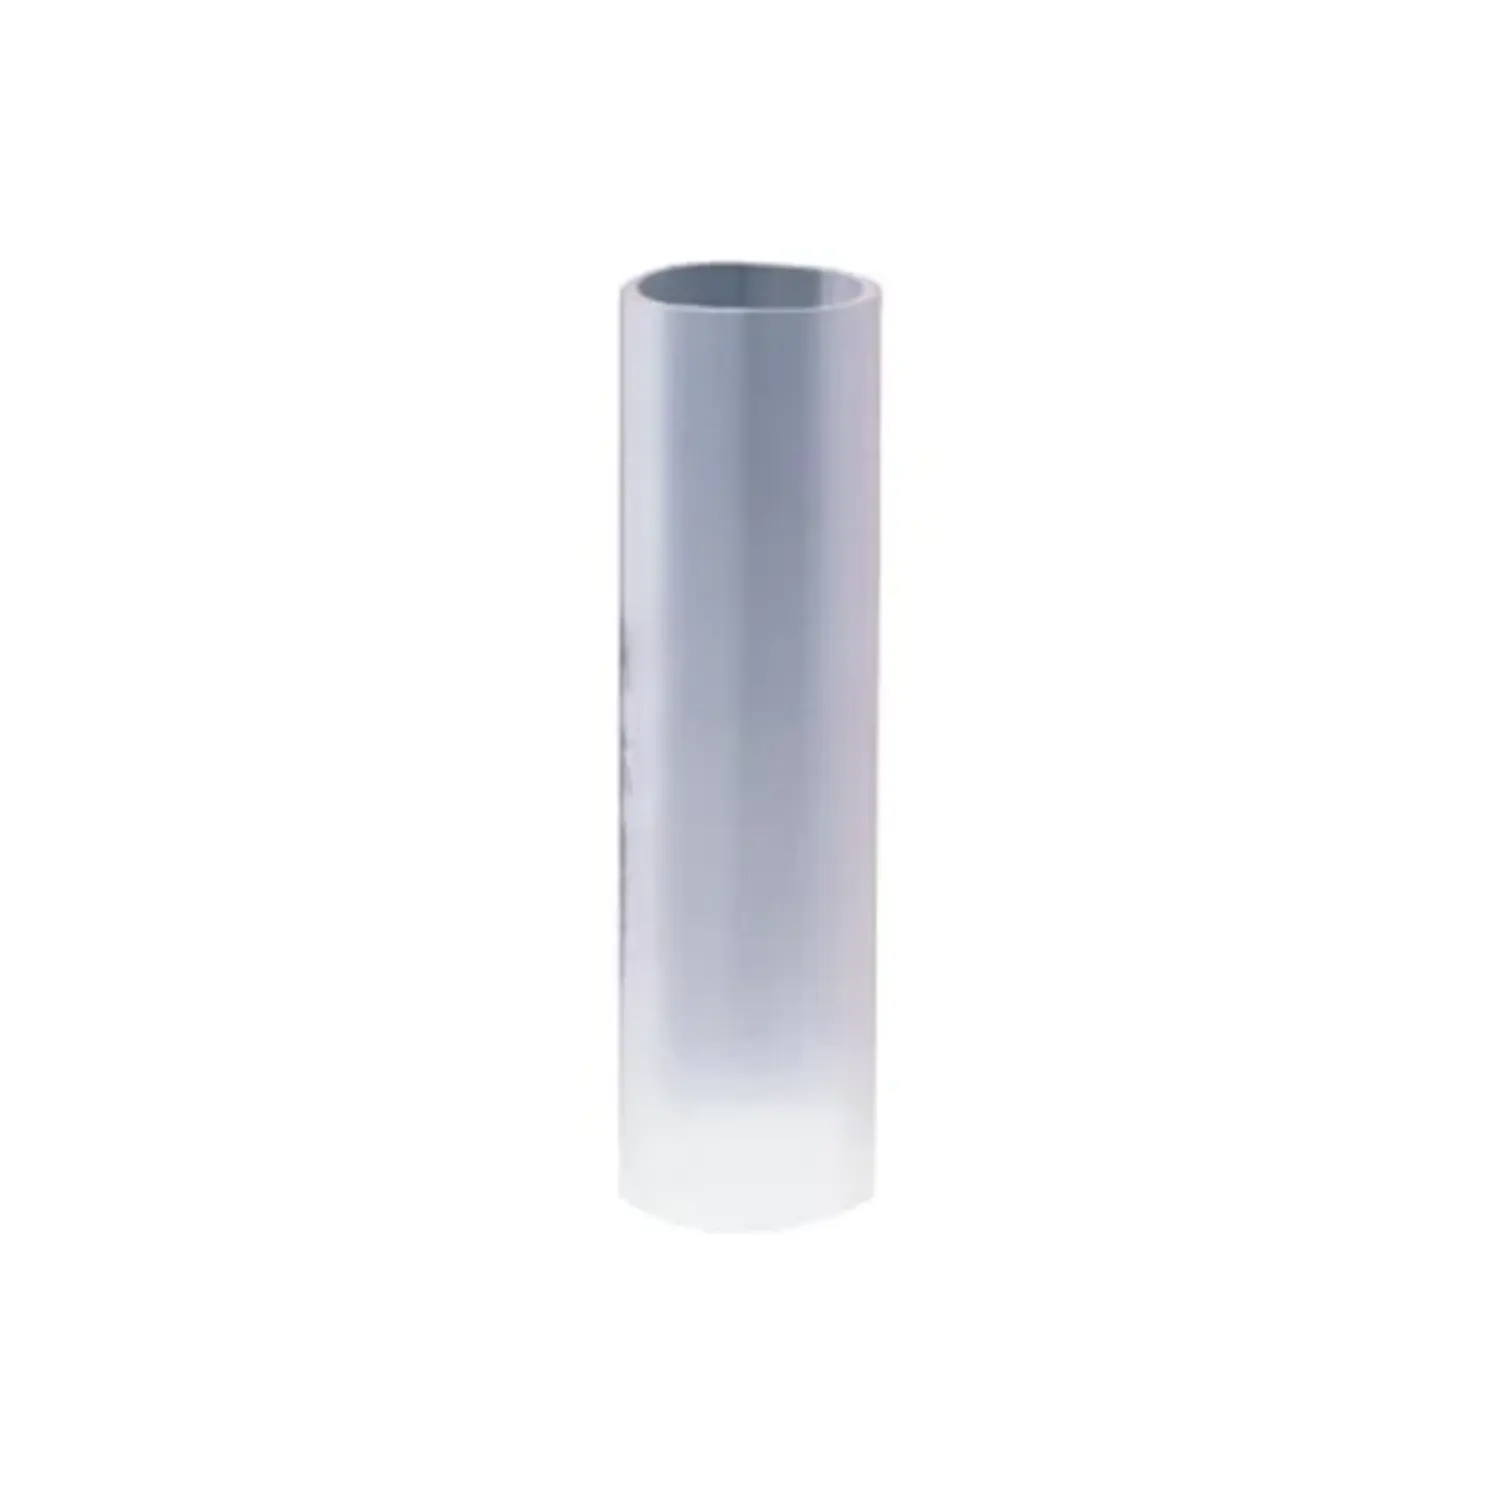 immagine del prodotto giunto manicotto tubo corrugato incasso gewiss    trasparente CE 32 mm gew dx52032